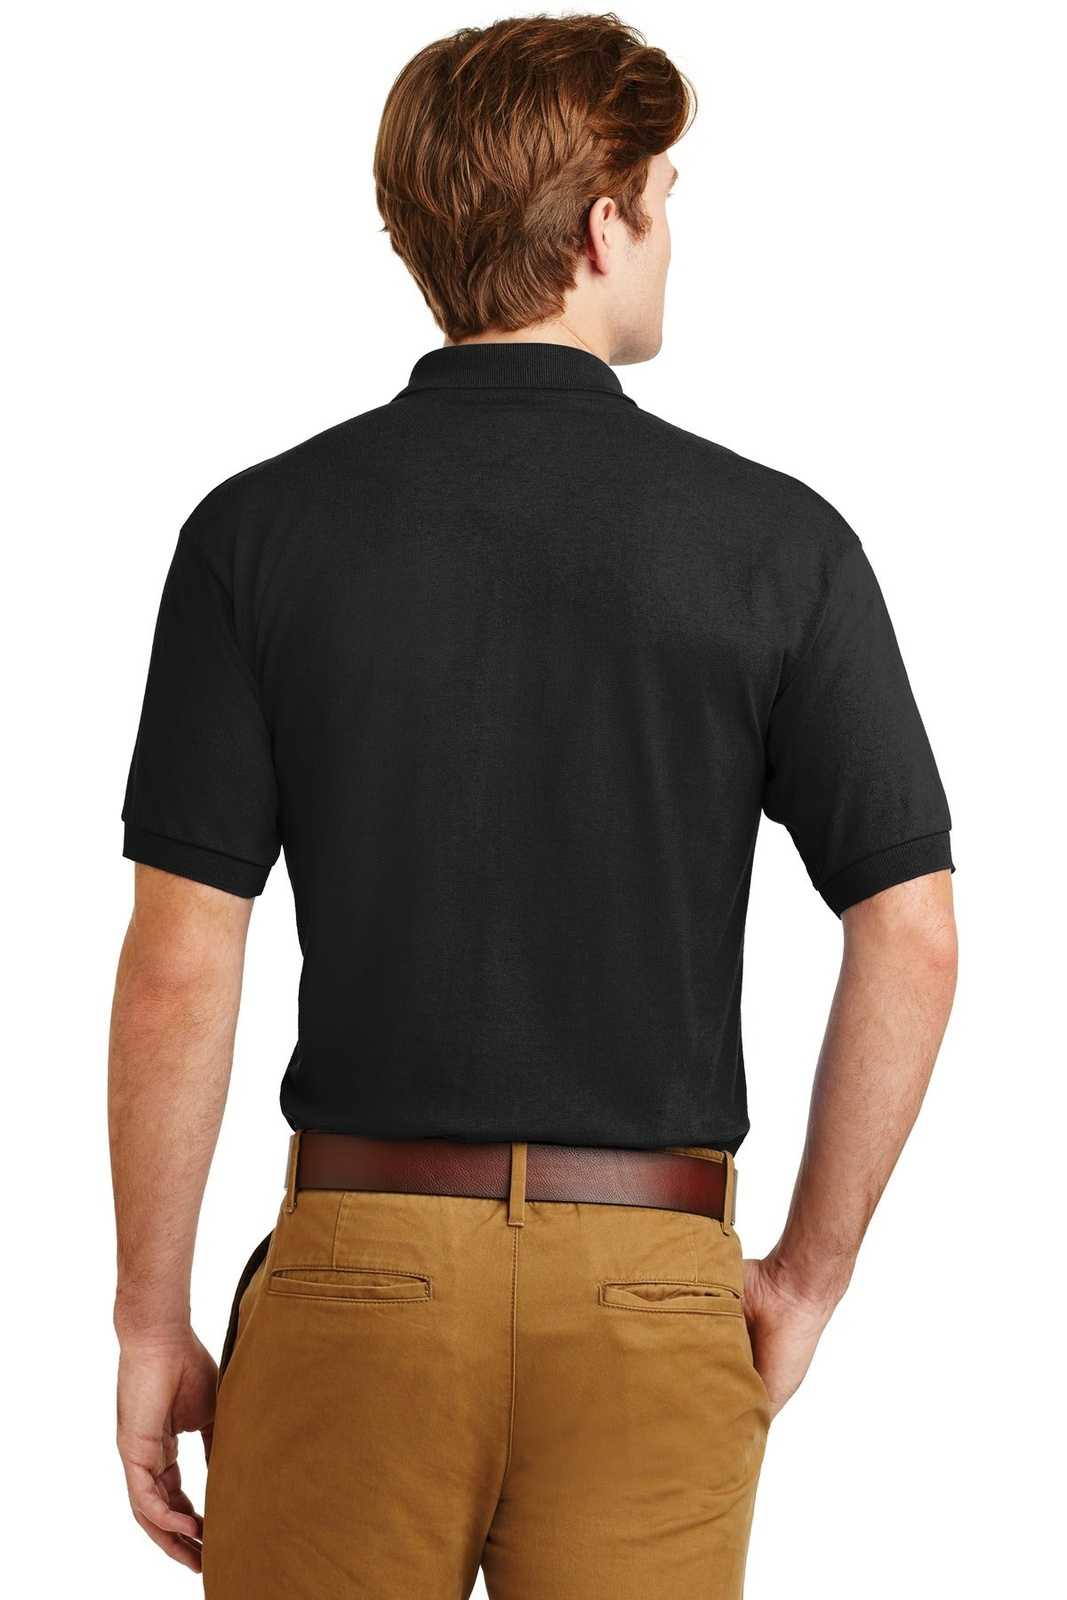 Gildan 8800 Dryblend 6-Ounce Jersey Knit Sport Shirt - Black - HIT a Double